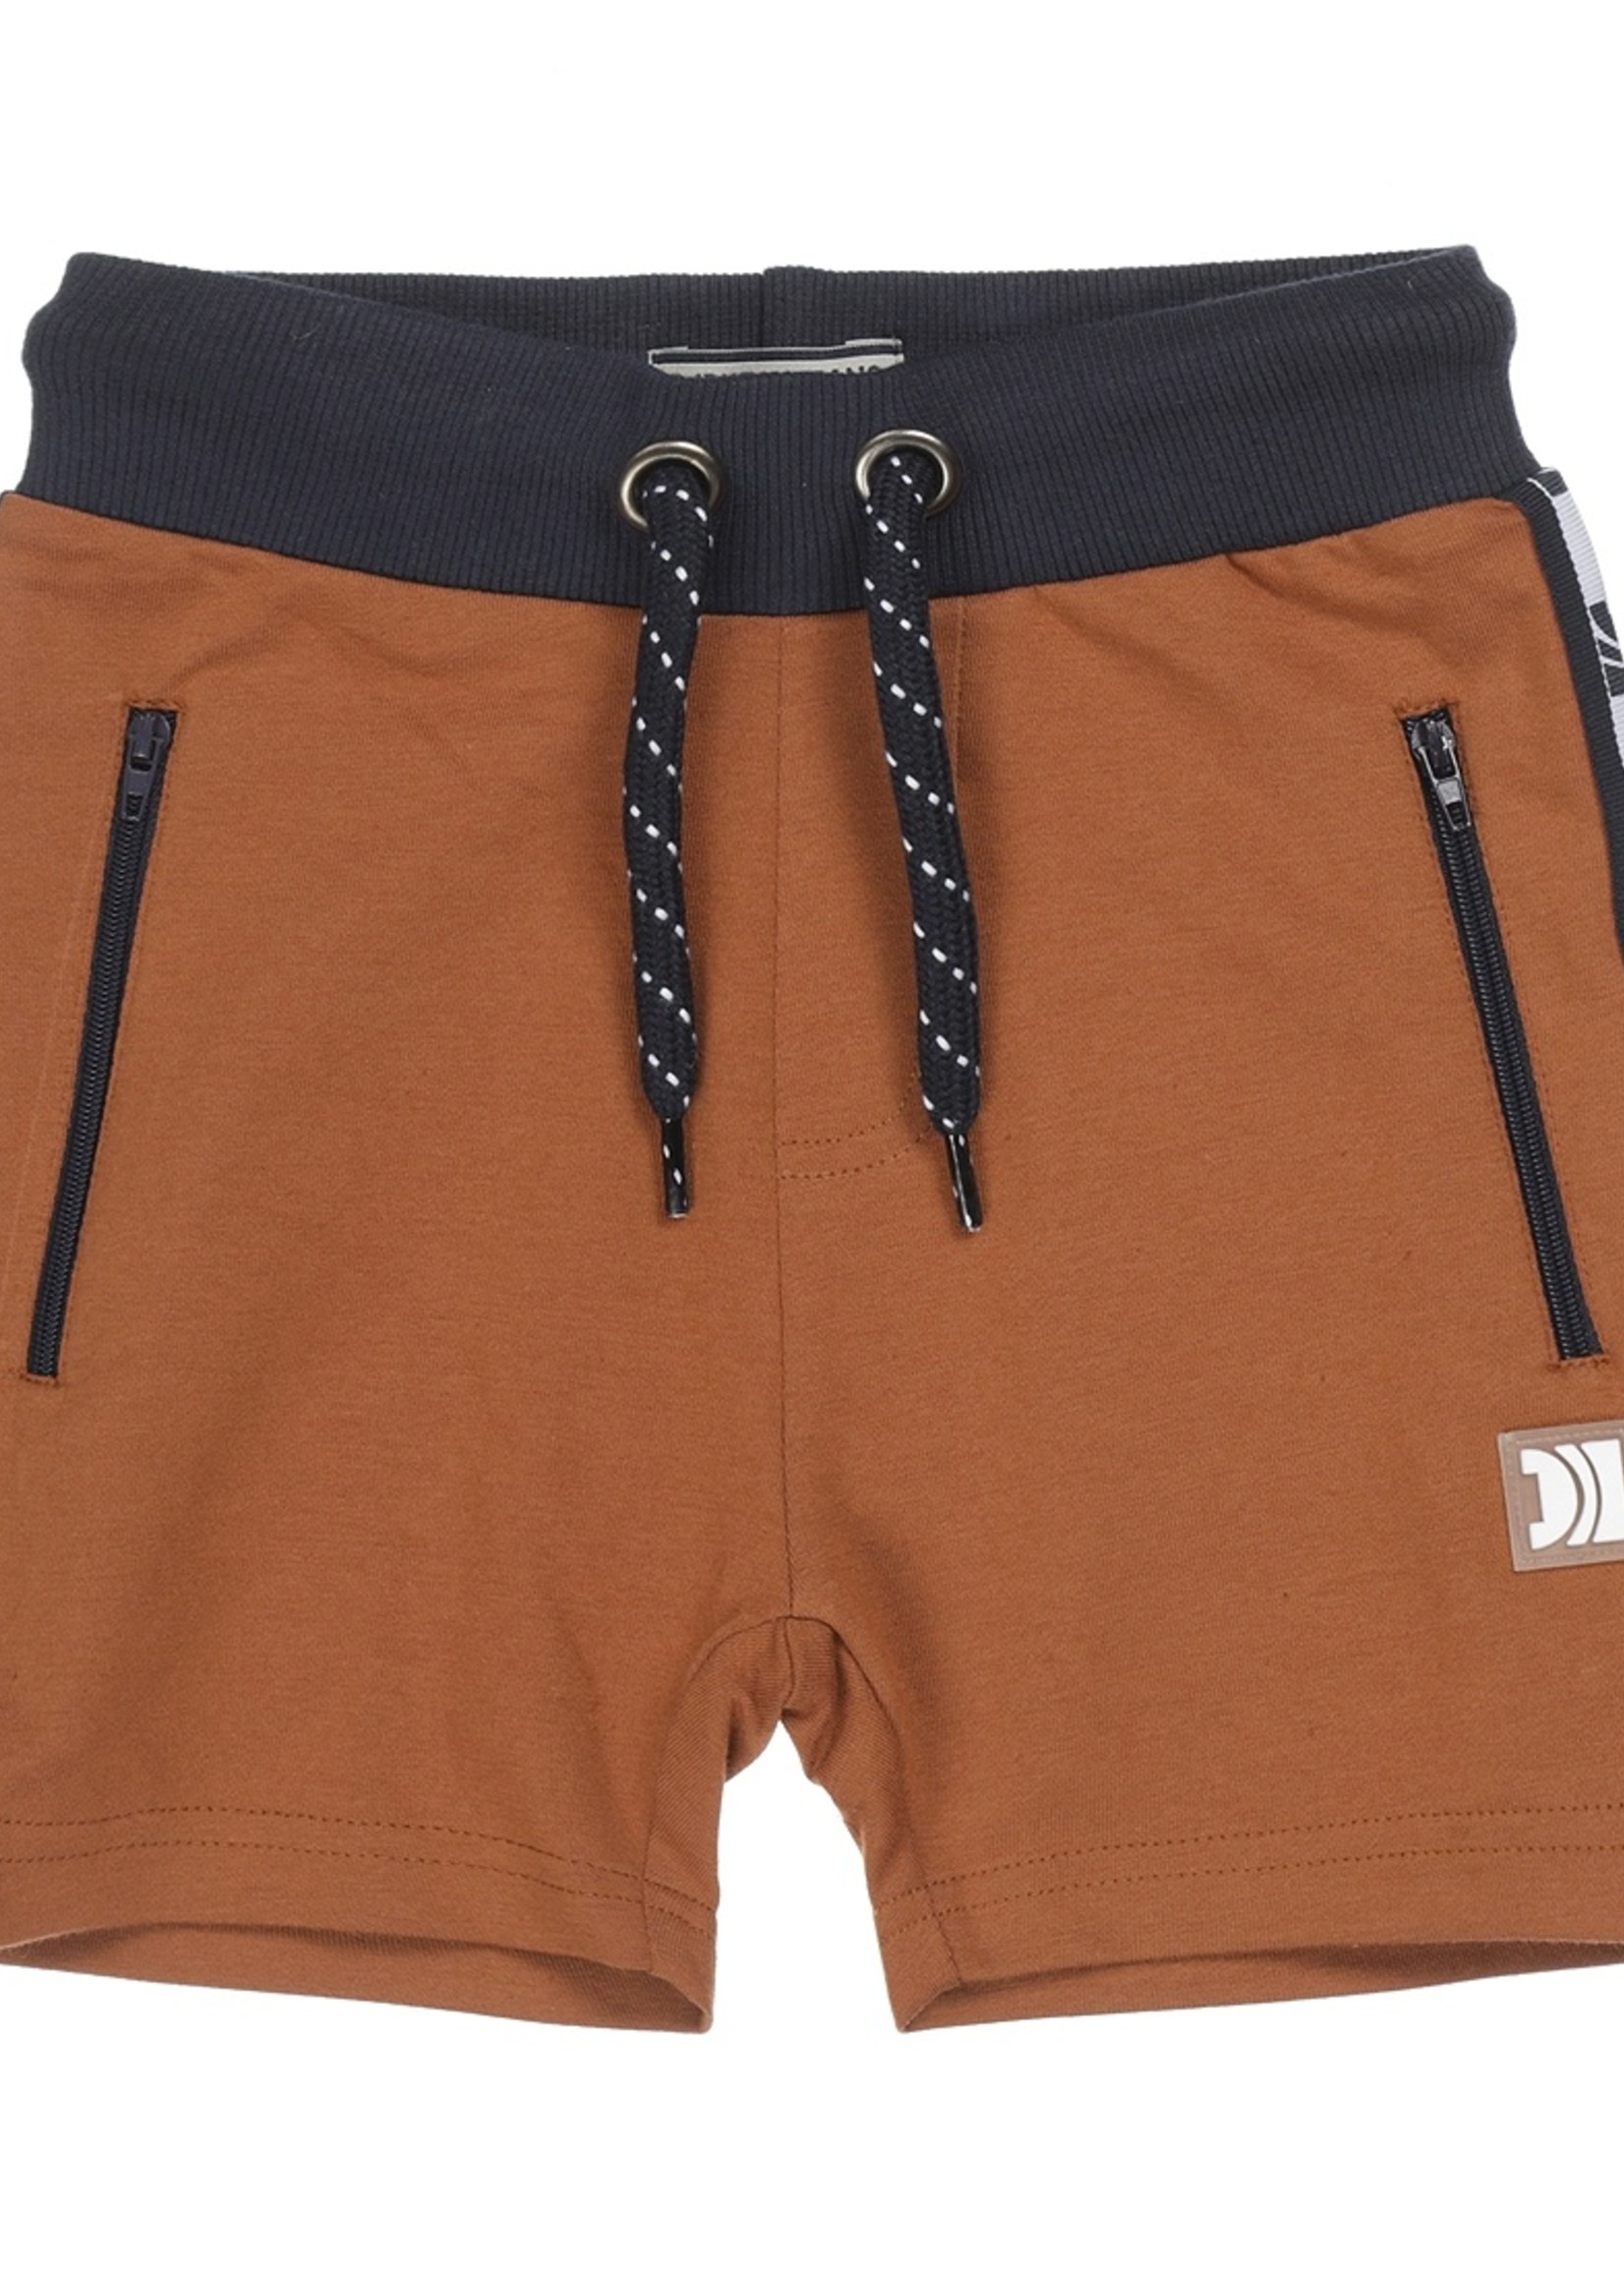 Dutch Jeans Jogging shorts. Caramel brown. V42106-45